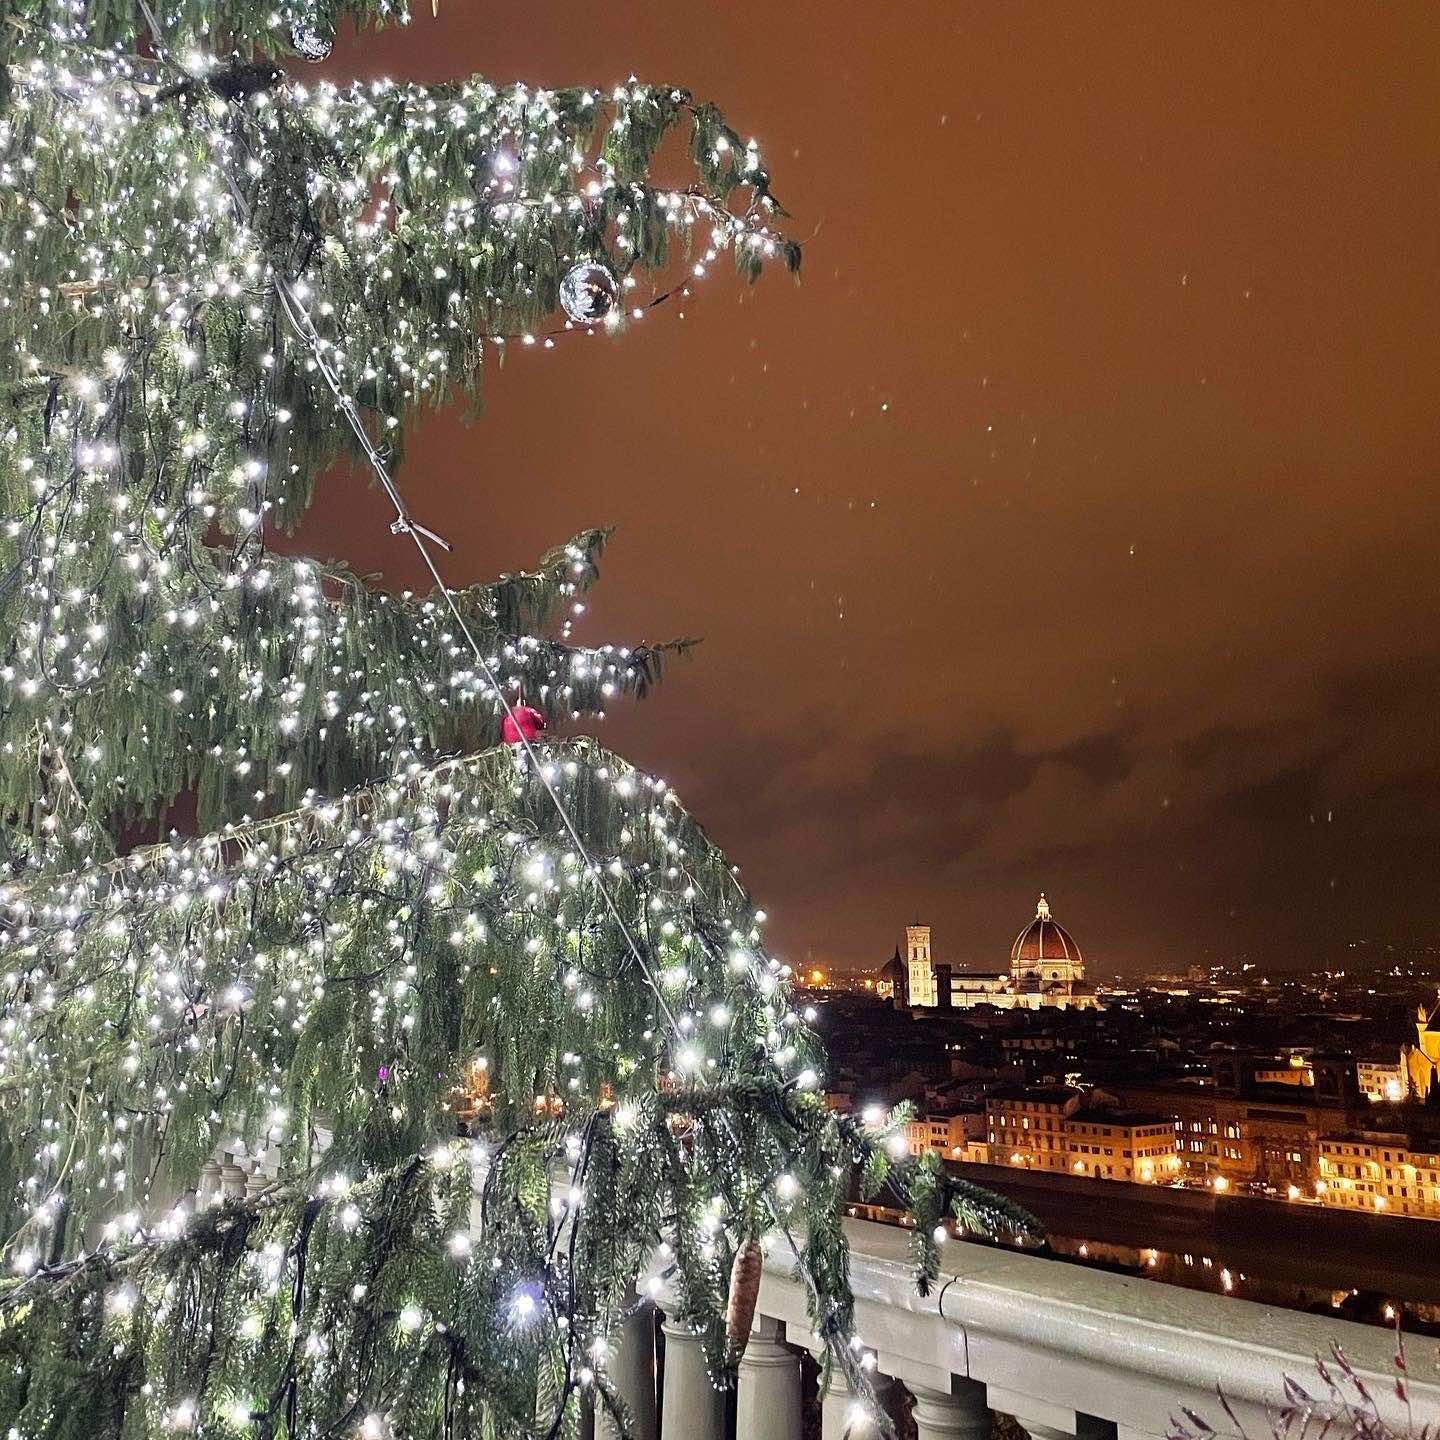 Feriado 8 de dezembro na Italia - na foto uma árvore de natal acesa em uma noite em Florença. no fundo dá para ver a catedral iluminada